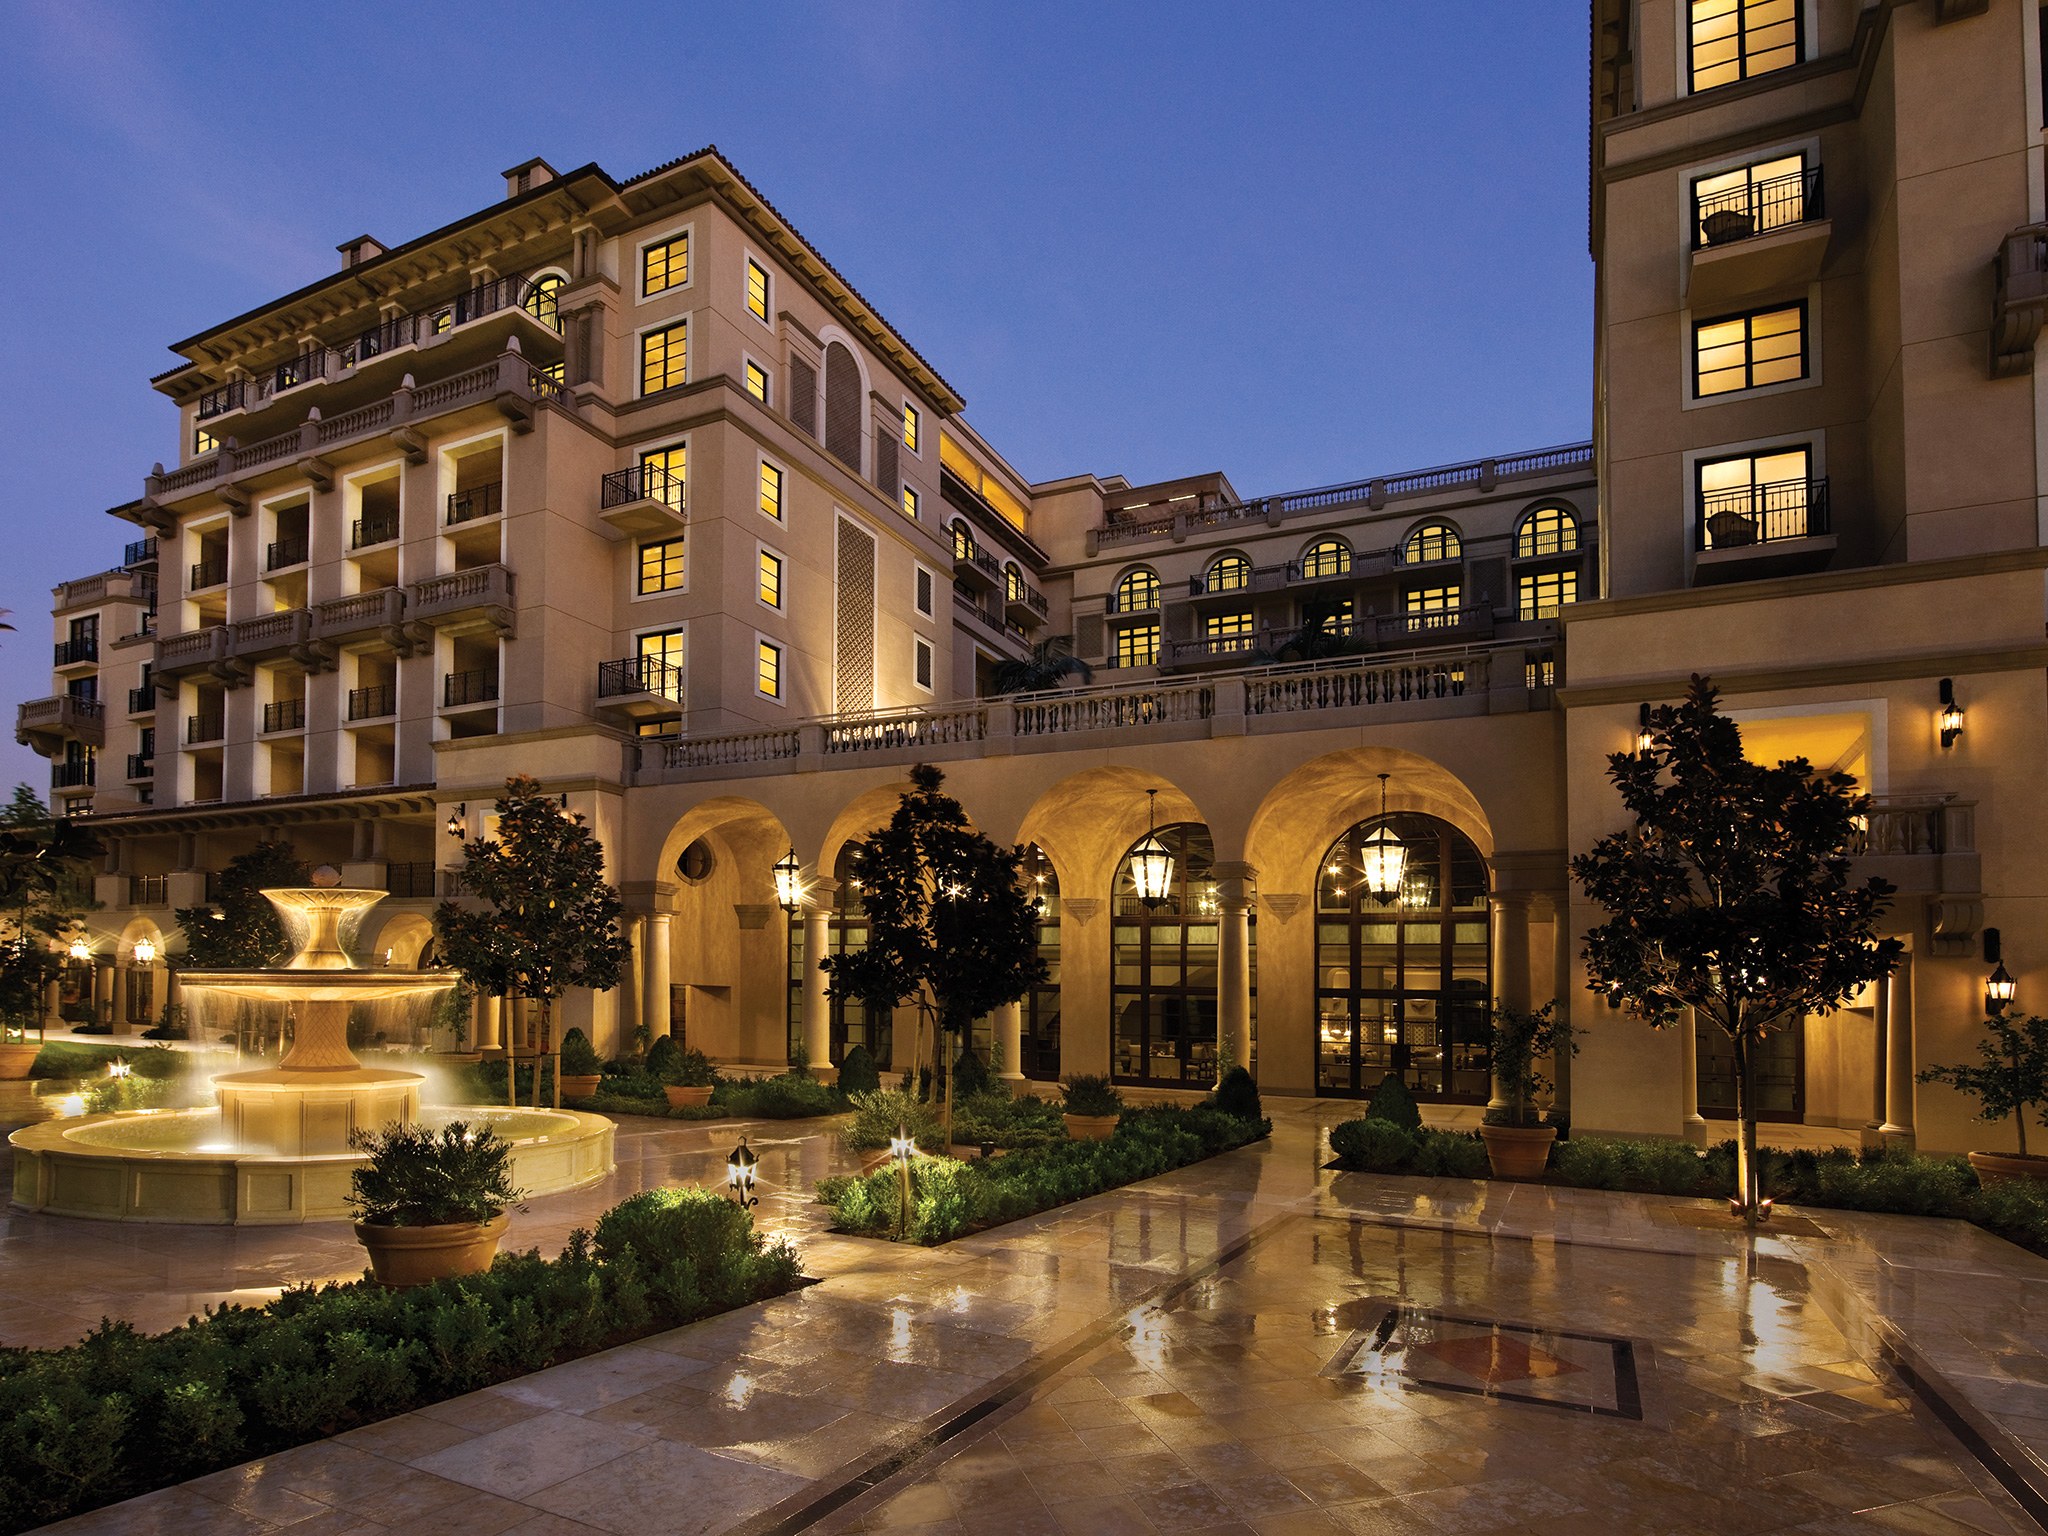 Montage Beverly Hills Hotel Re Cond Nast Traveler